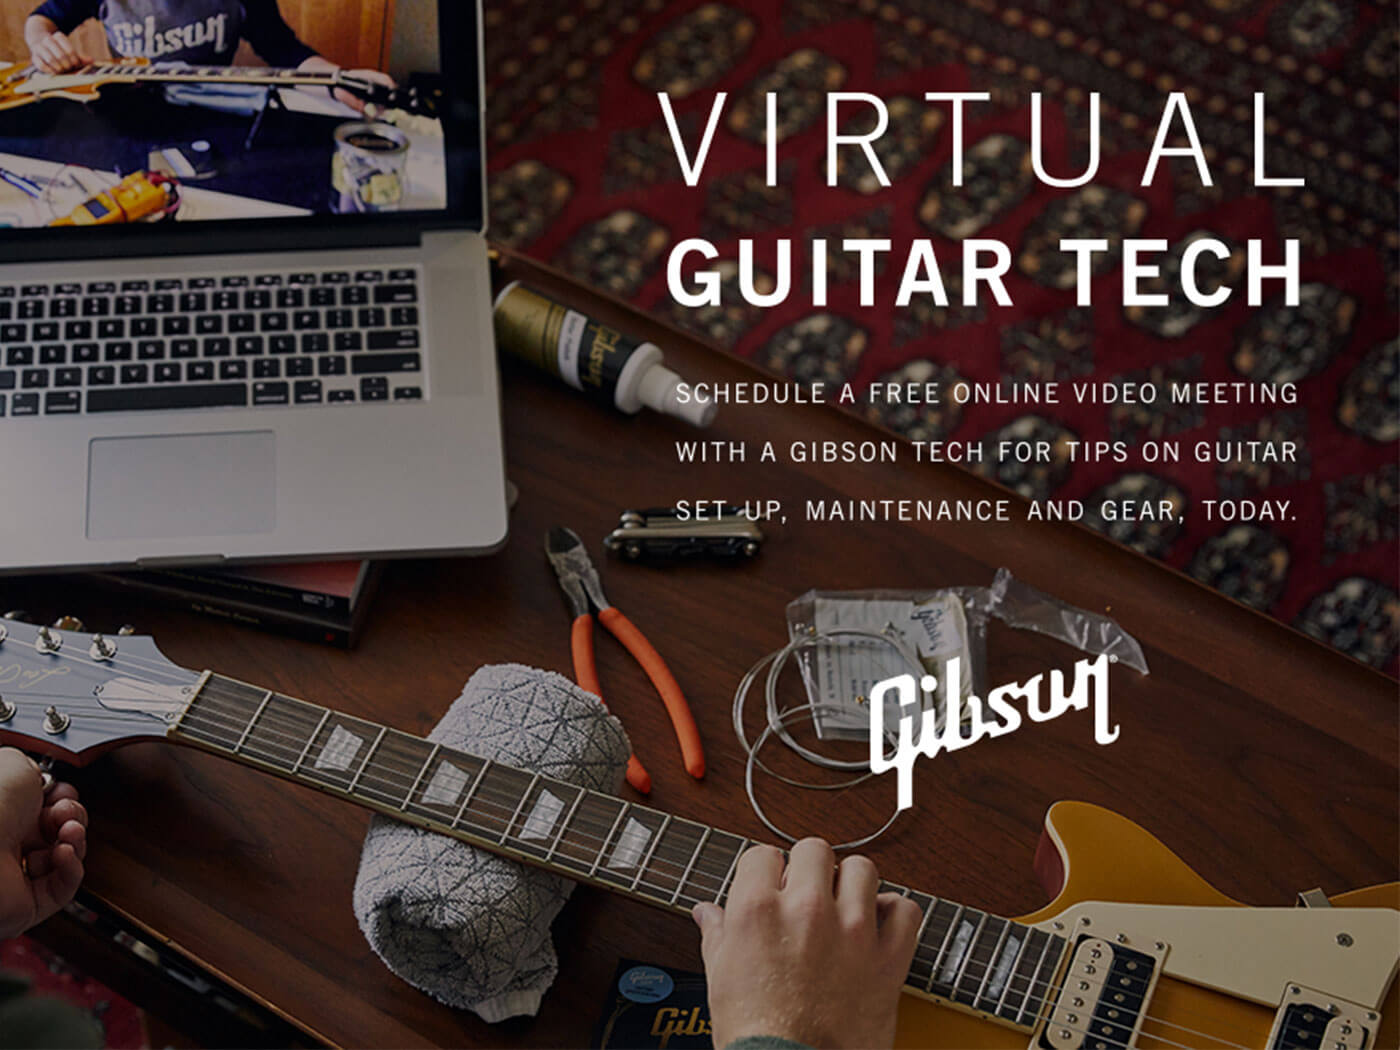 Gibson's virtual guitar tech service